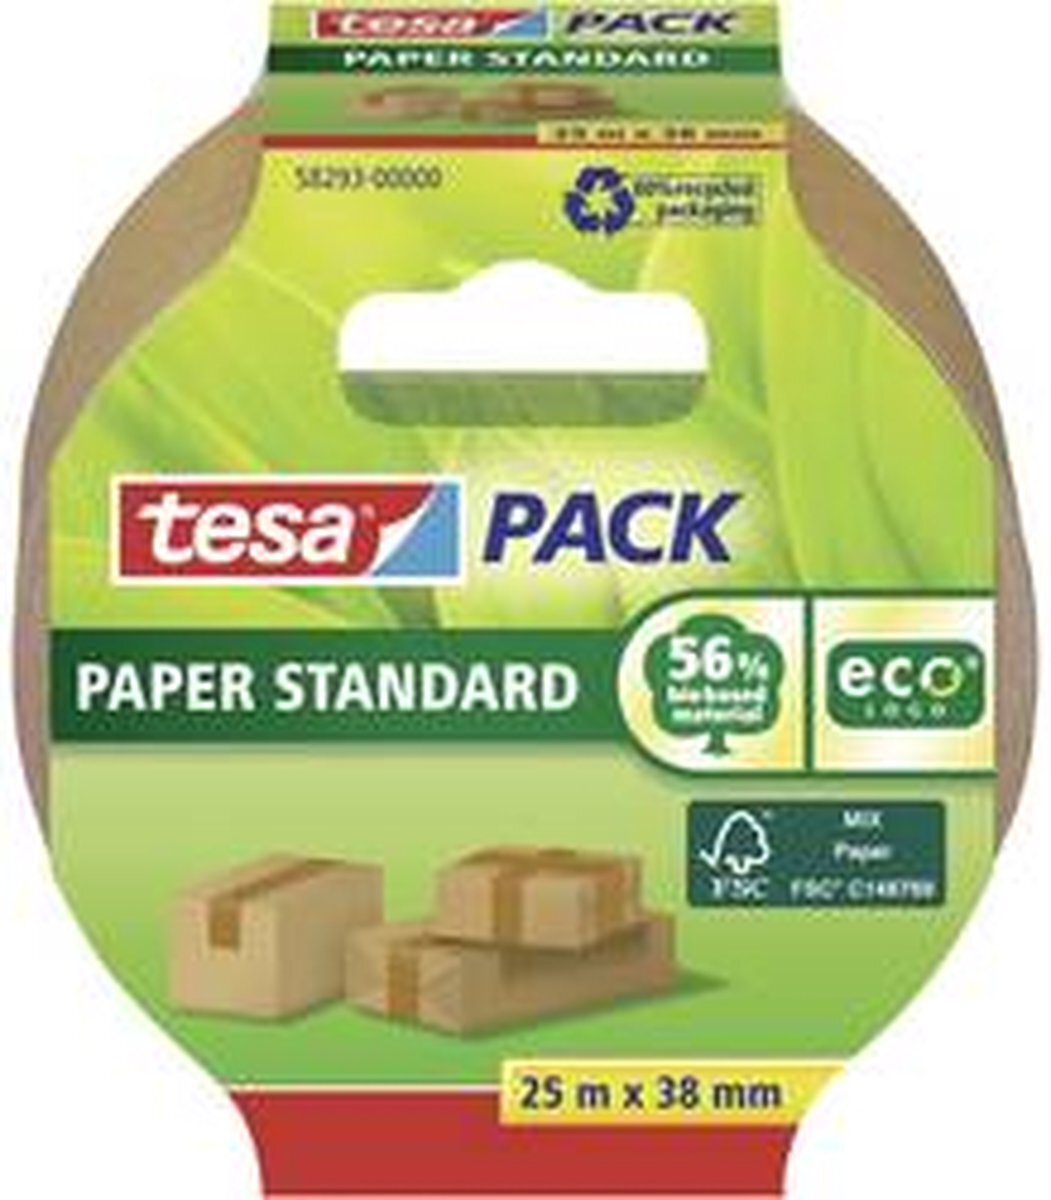 tesa tesapack Paper Standard - Milieuvriendelijke Papieren Verpakkingstape, 56% Biologische Materialen - Efficiënt en Recyclebaar - Bruin - 25 m x 38 mm